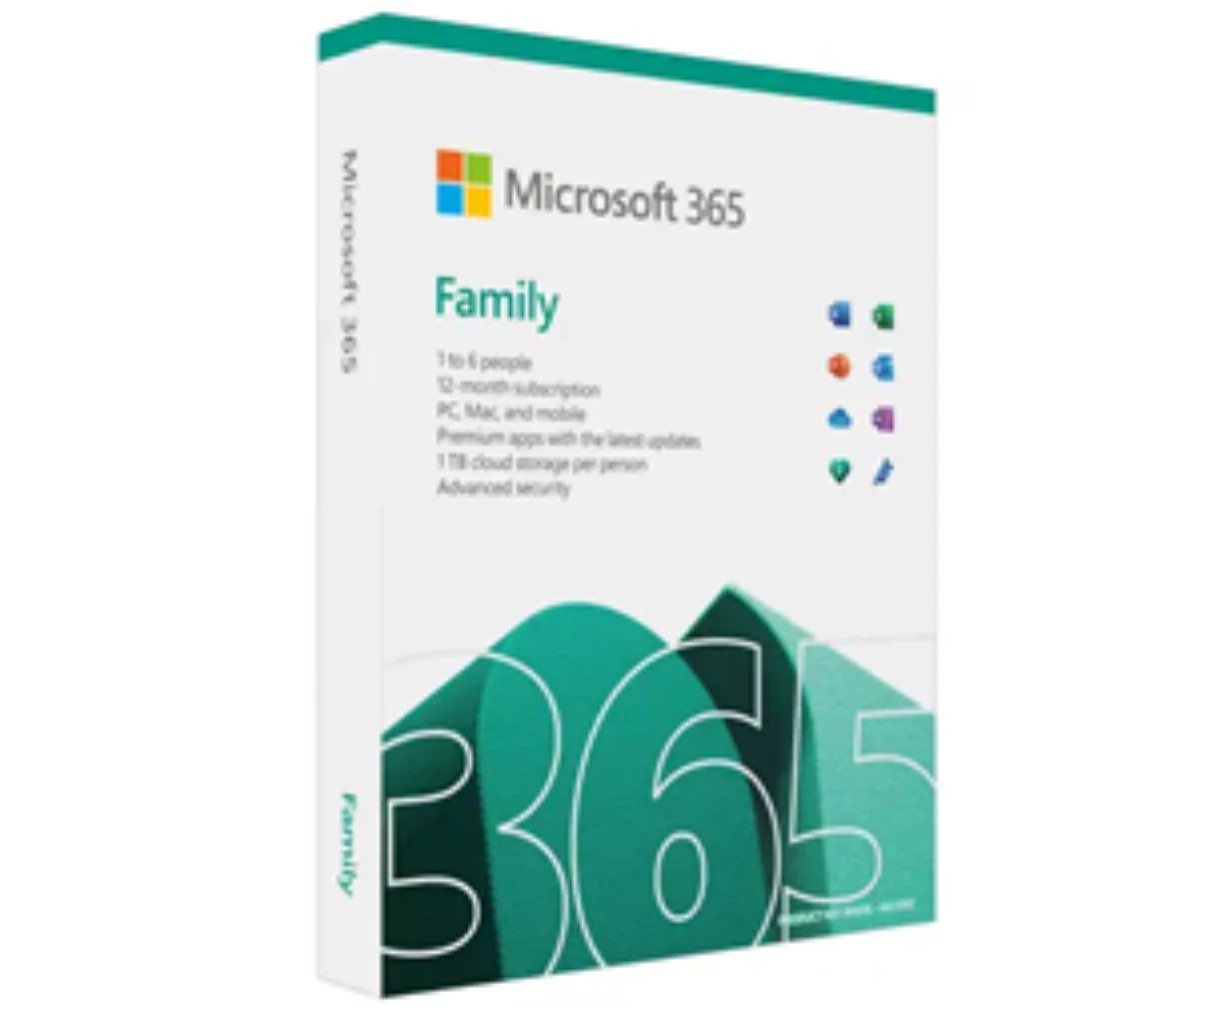 Microsoft 365 Family 家用版 (英文)